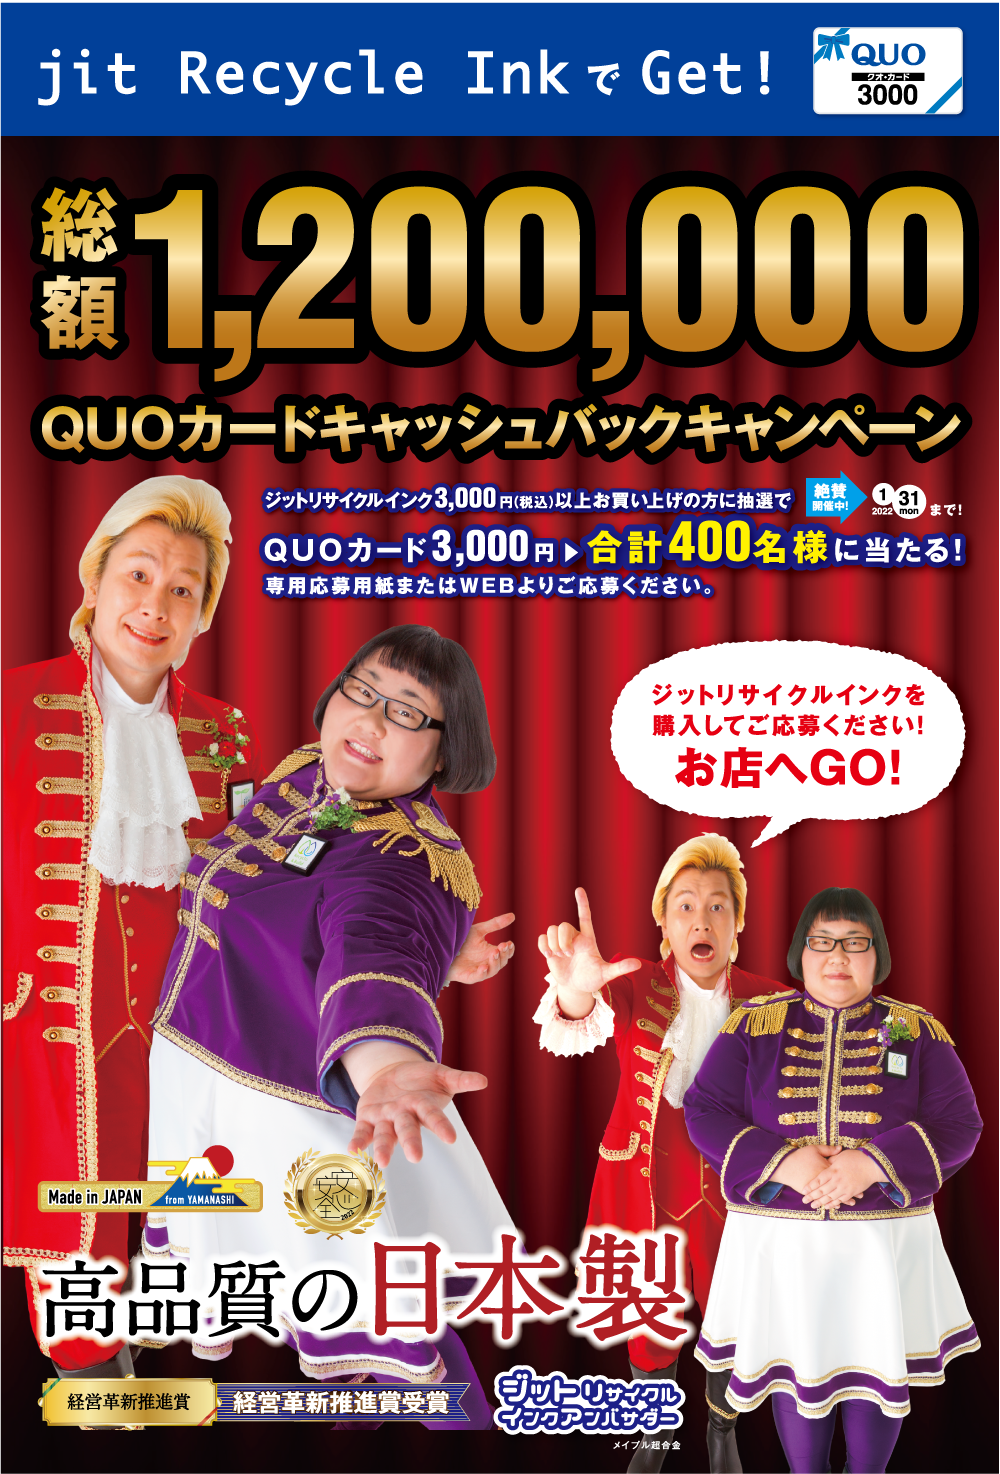 山梨から日本を元気に　メイプル超合金とジットが応援！
120万円 QUOカードキャッシュバックキャンペーンを開始